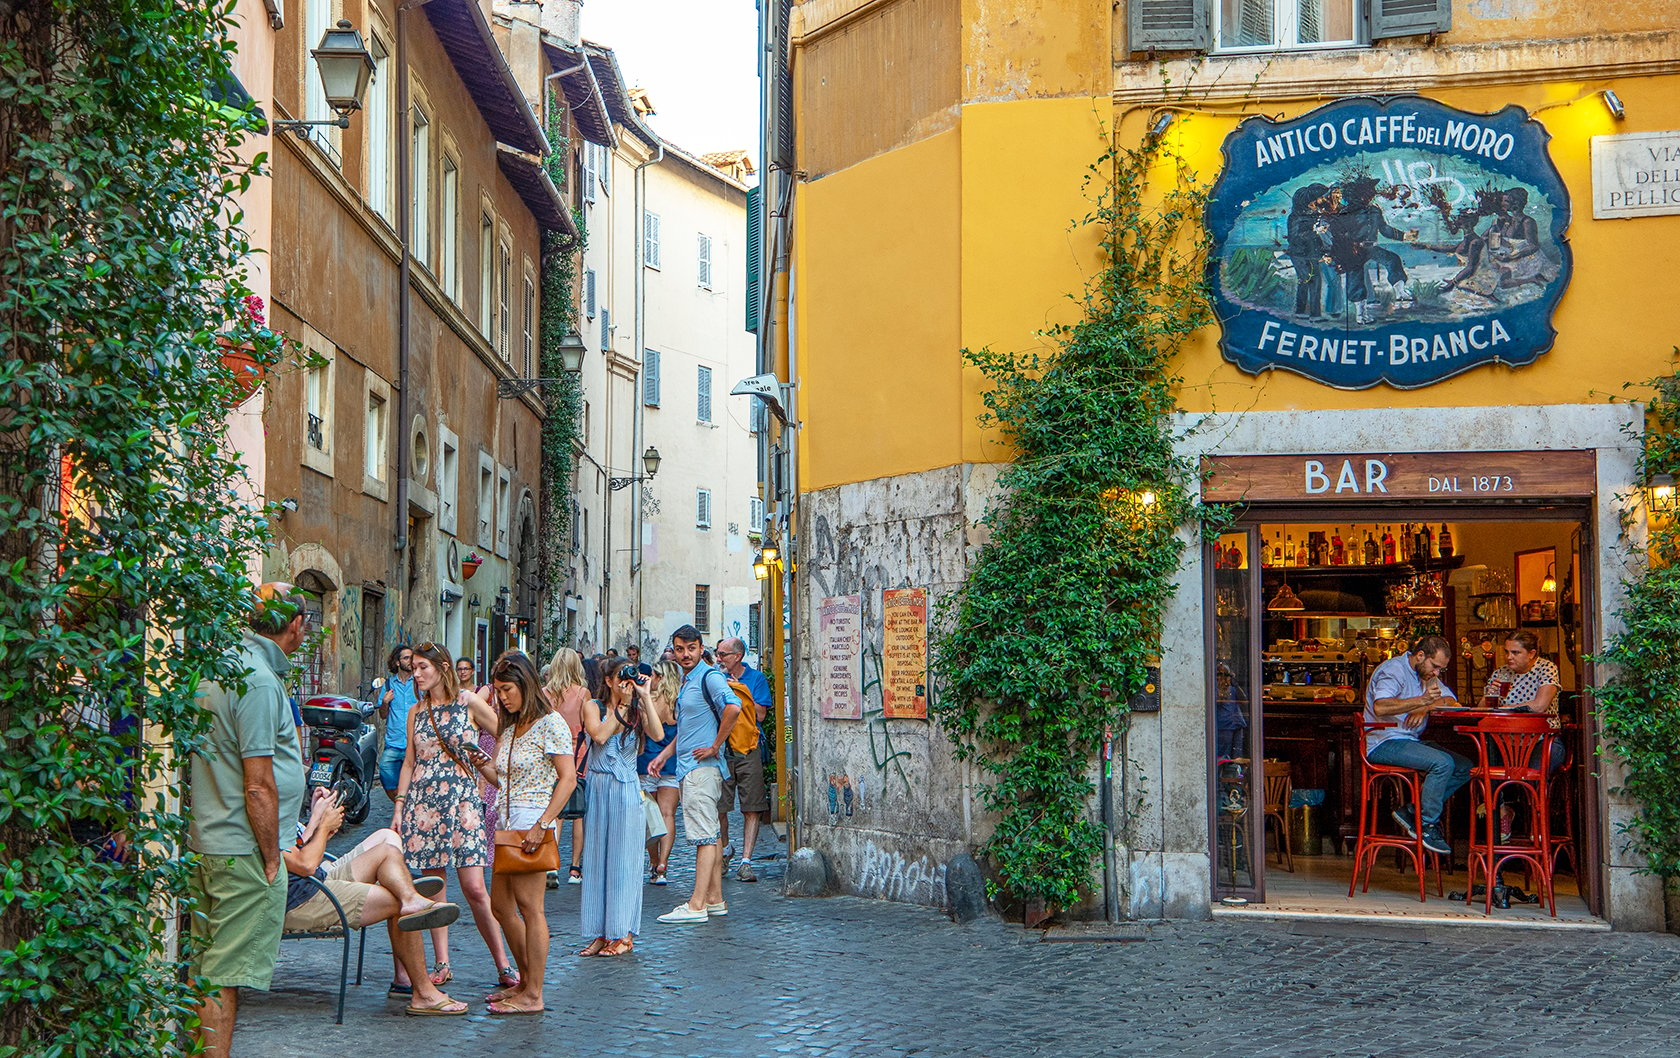 Street scene in Trastevere